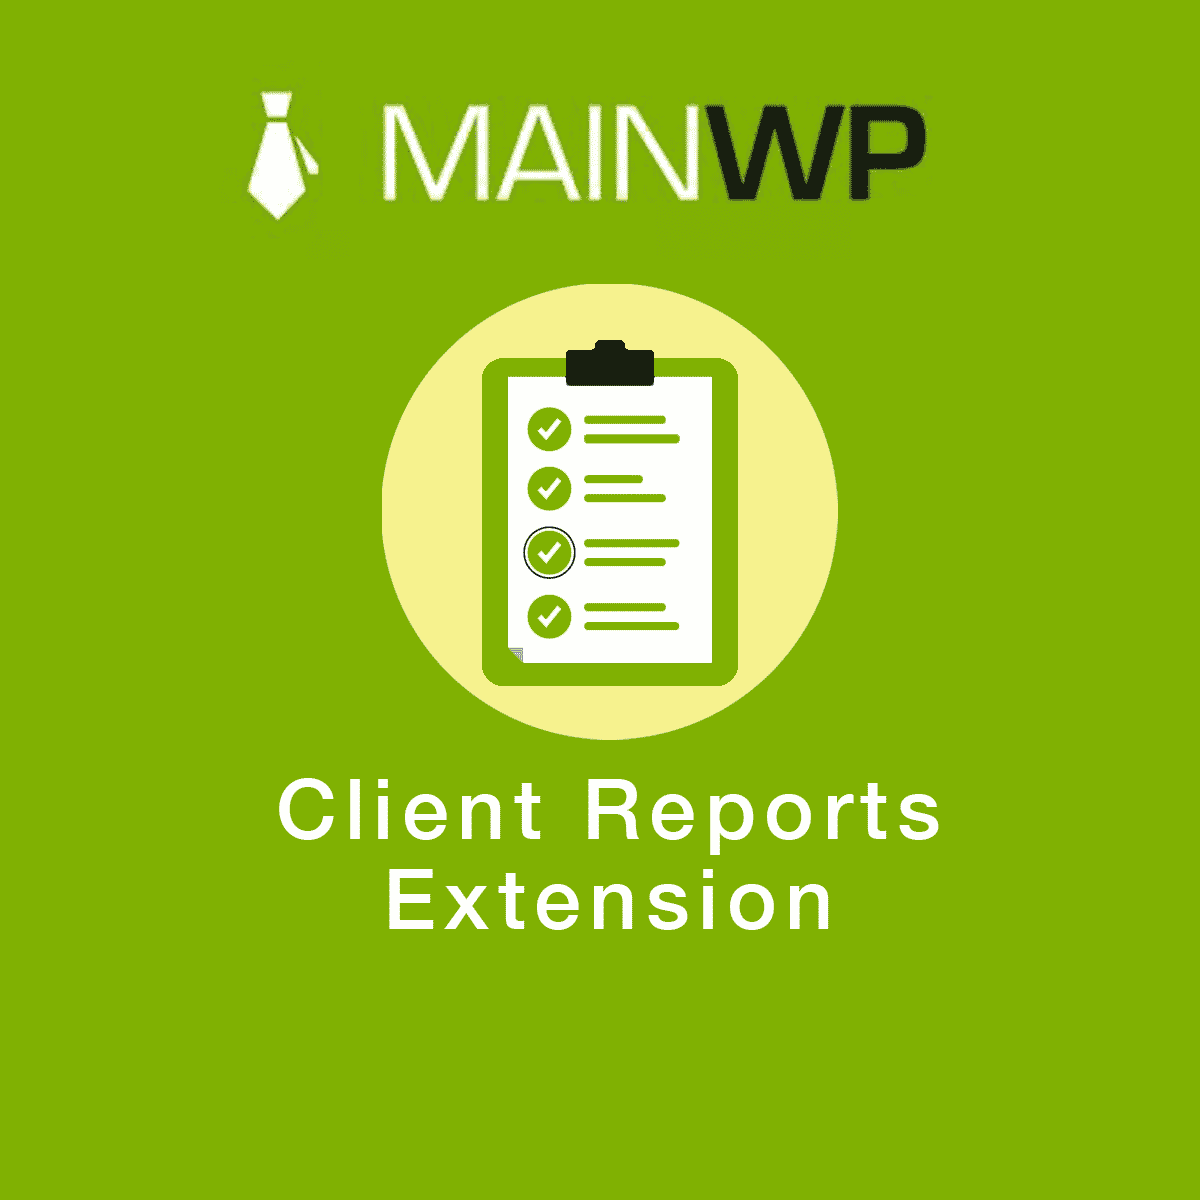 دانلود افزونه وردپرس MainWP Client Reports